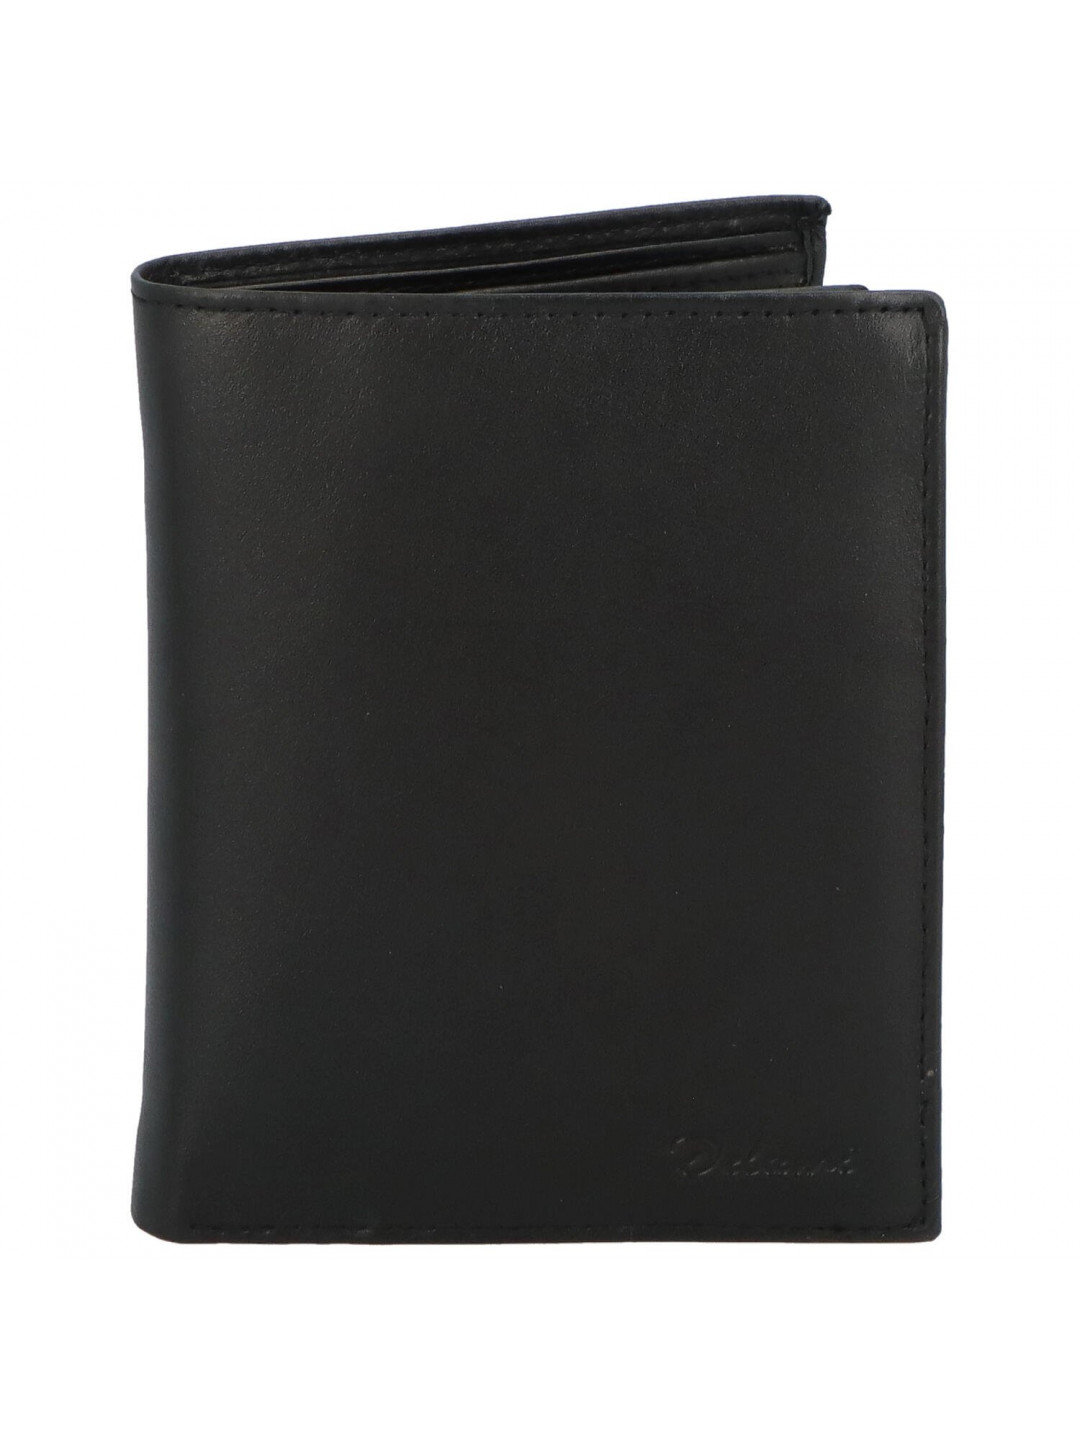 Pánská praktická kožená peněženka Eugenio černá